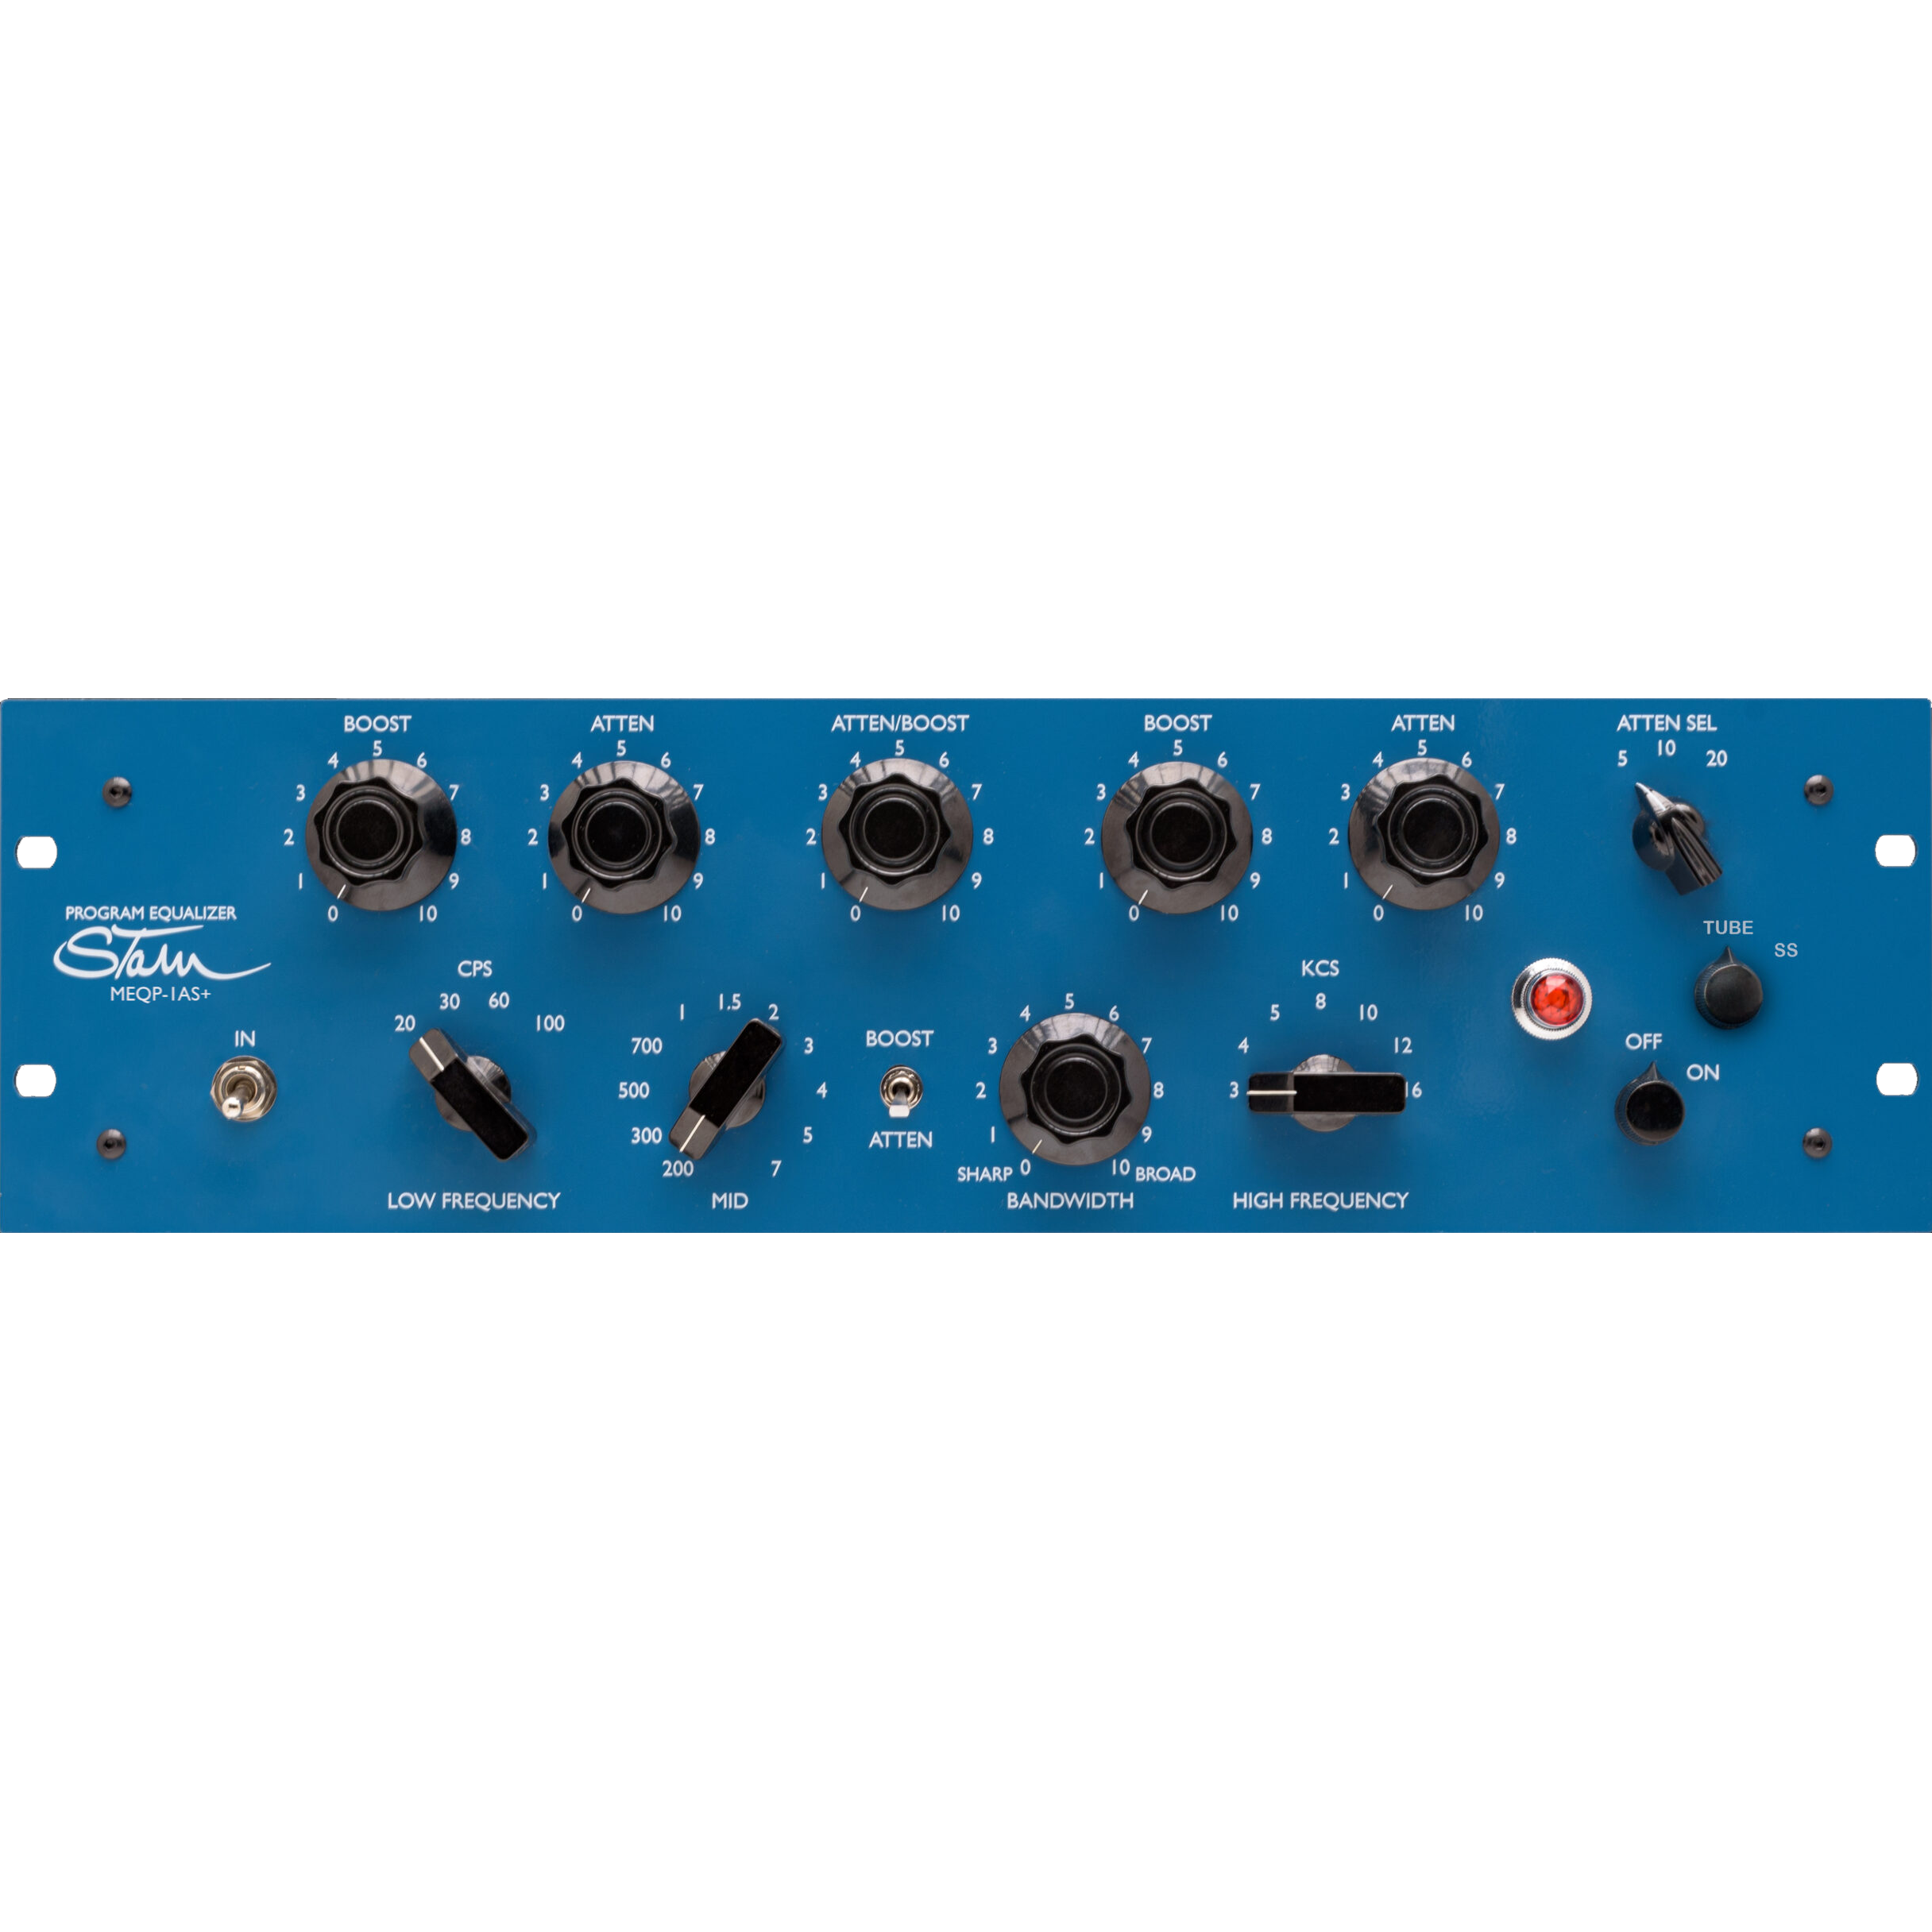 Stam Audio MEQP-1AS+ | Ecualizador de válvulas analógico